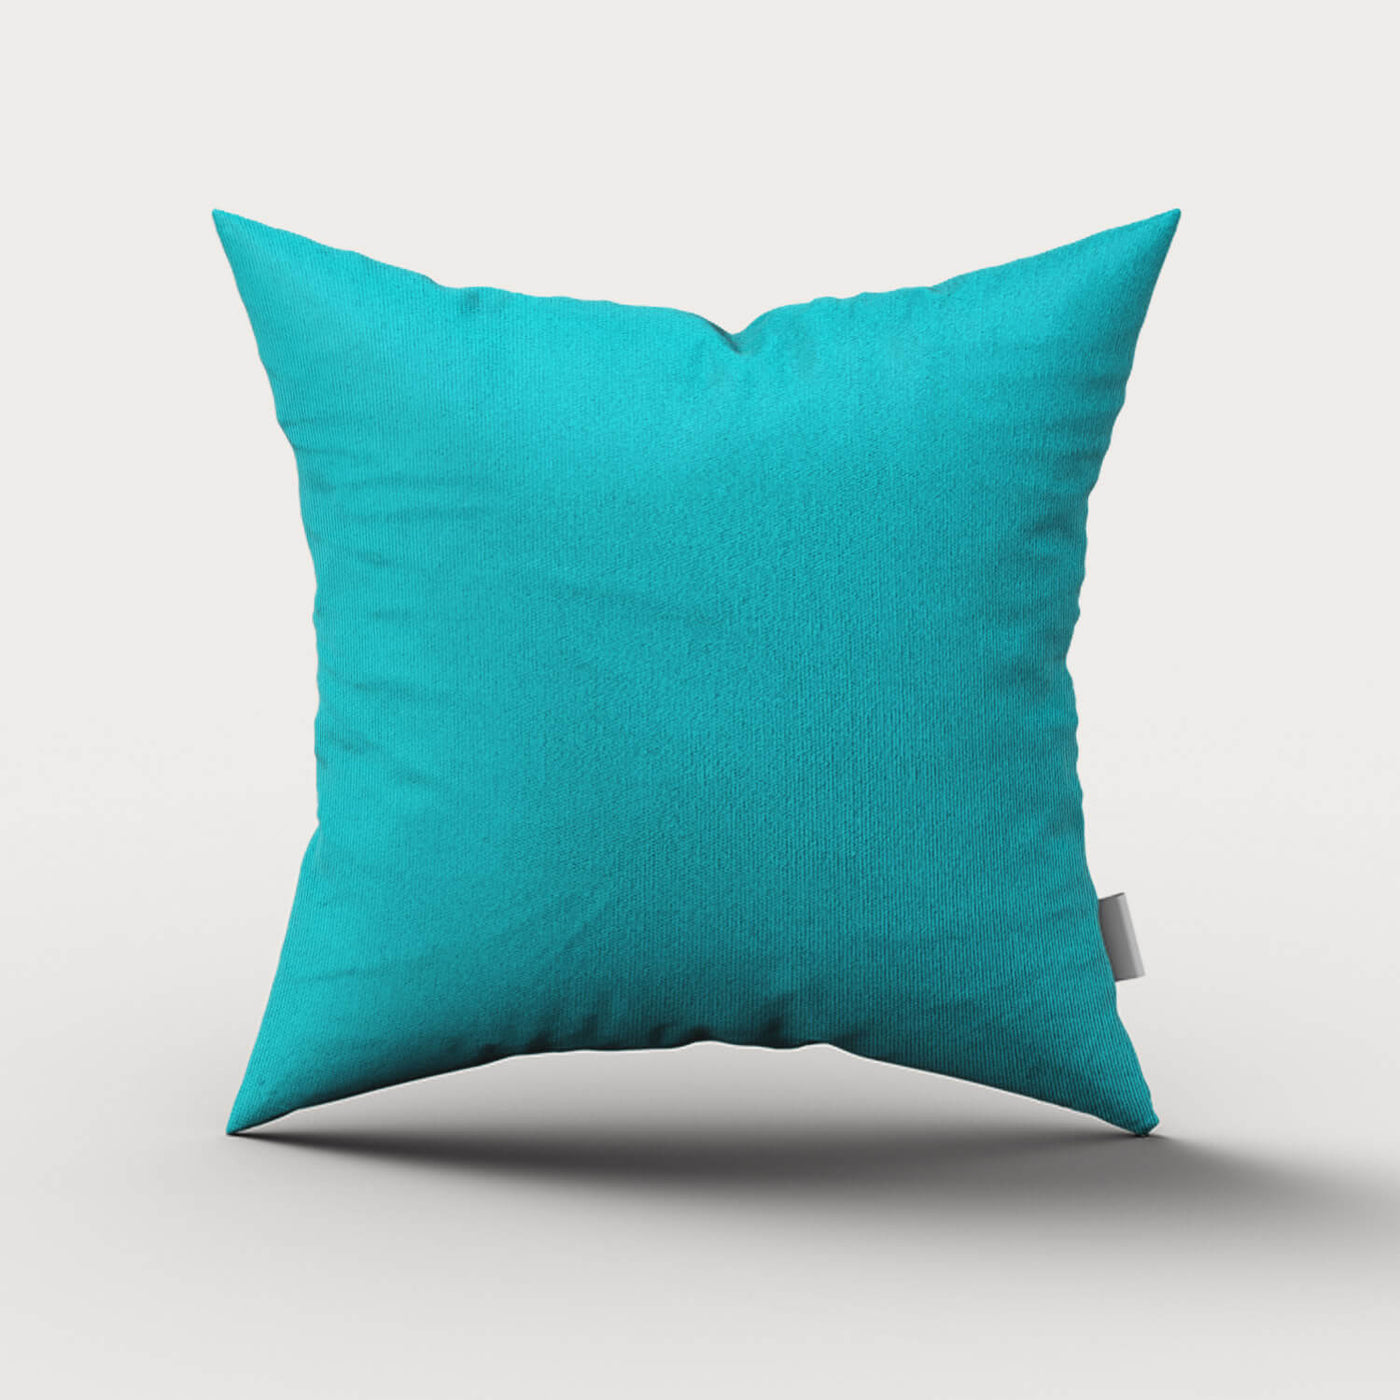 PENGI Waterproof Outdoor Throw Pillows 1 Pcs - Pure